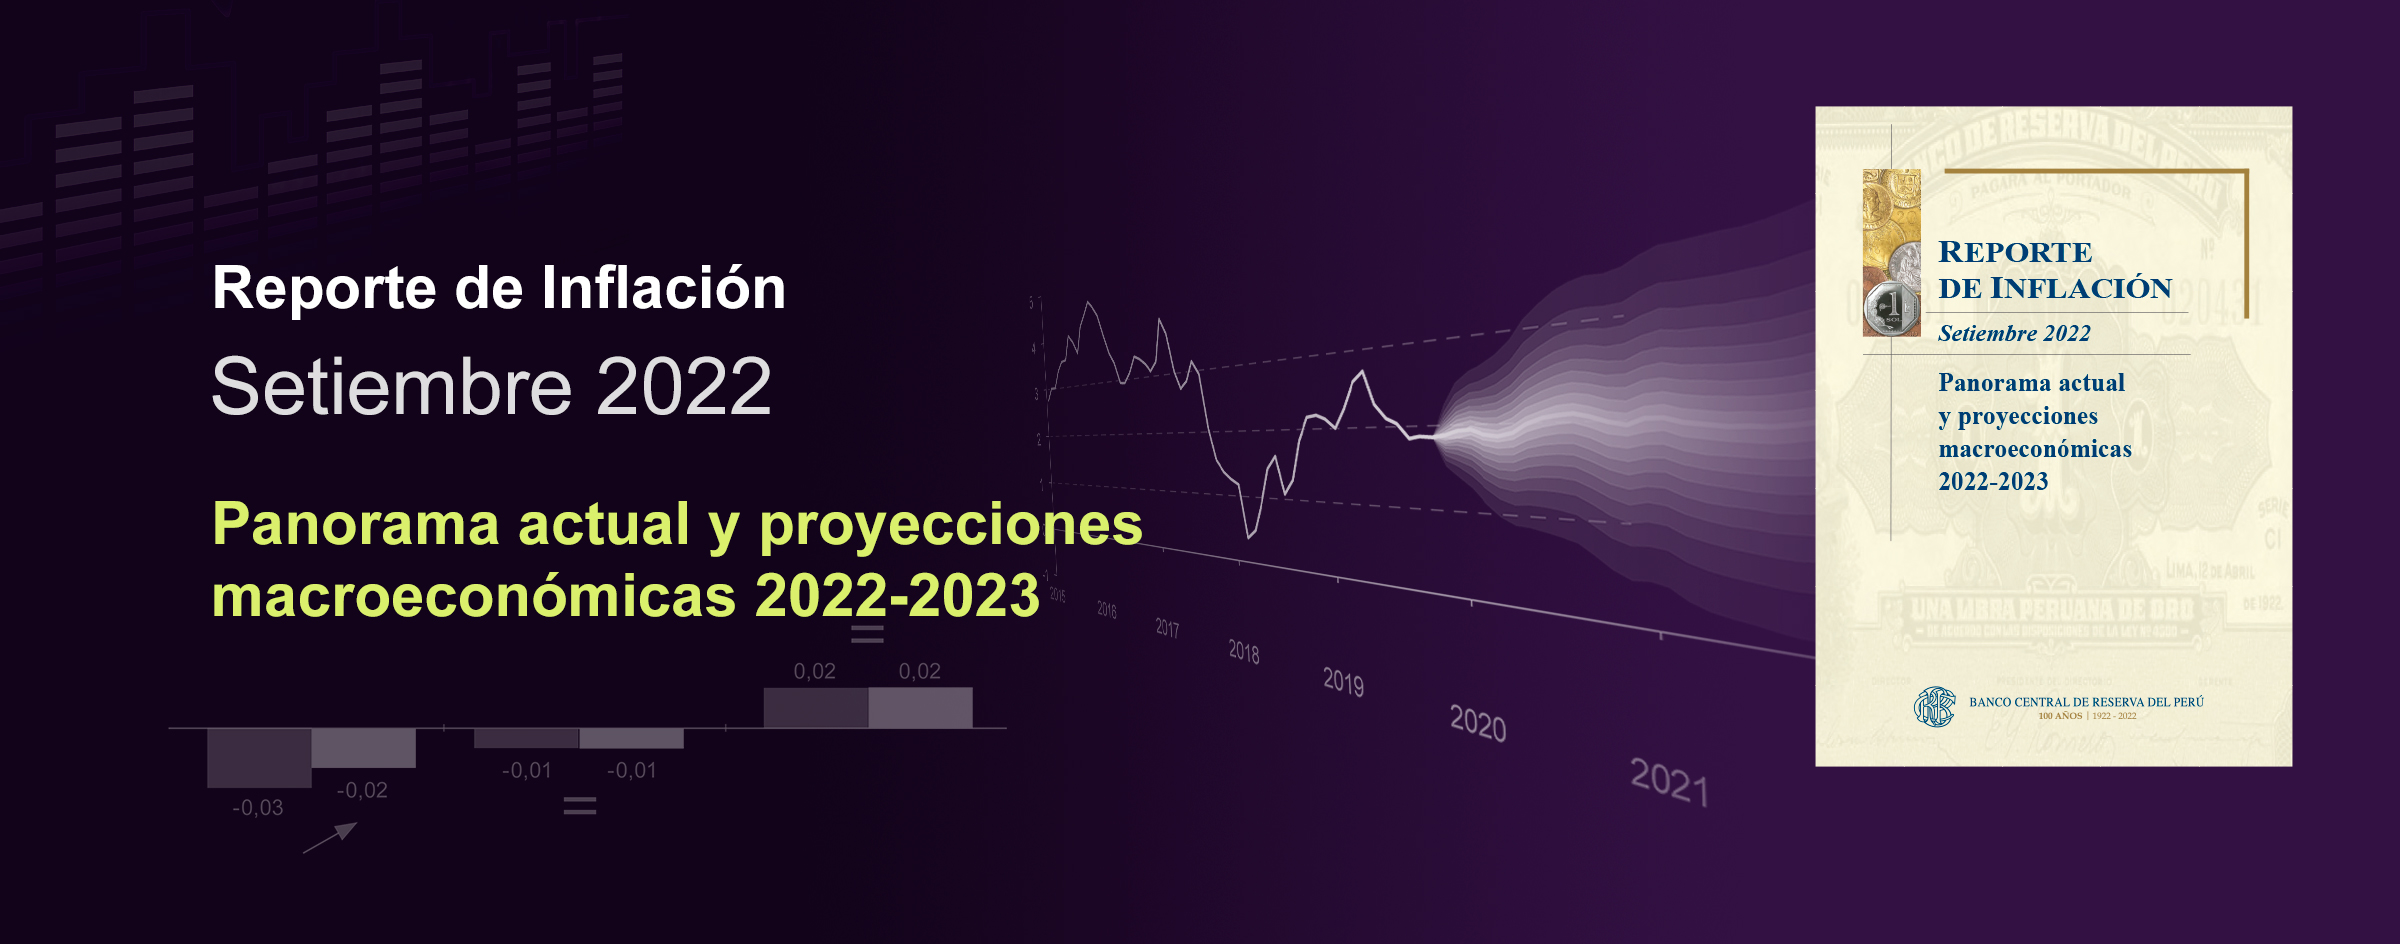 Reporte de Inflación Setiembre 2022: Panorama actual y proyecciones macroeconómicas 2022-2023